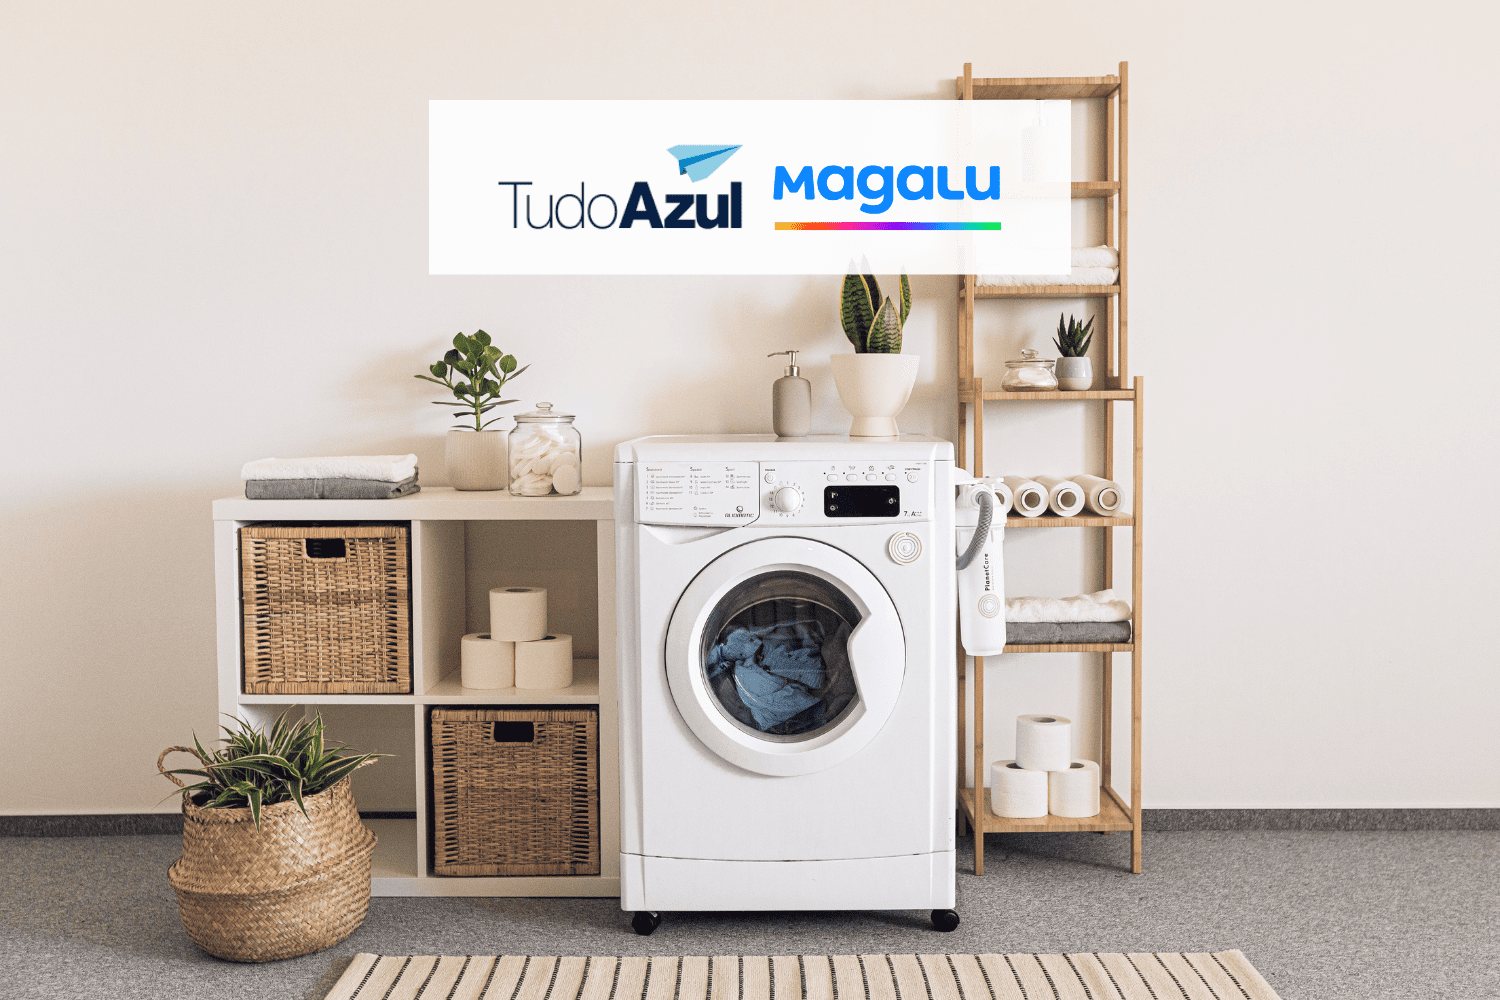 máquina de lavar com logo TudoAzul e Magalu 12 pontos TudoAzul